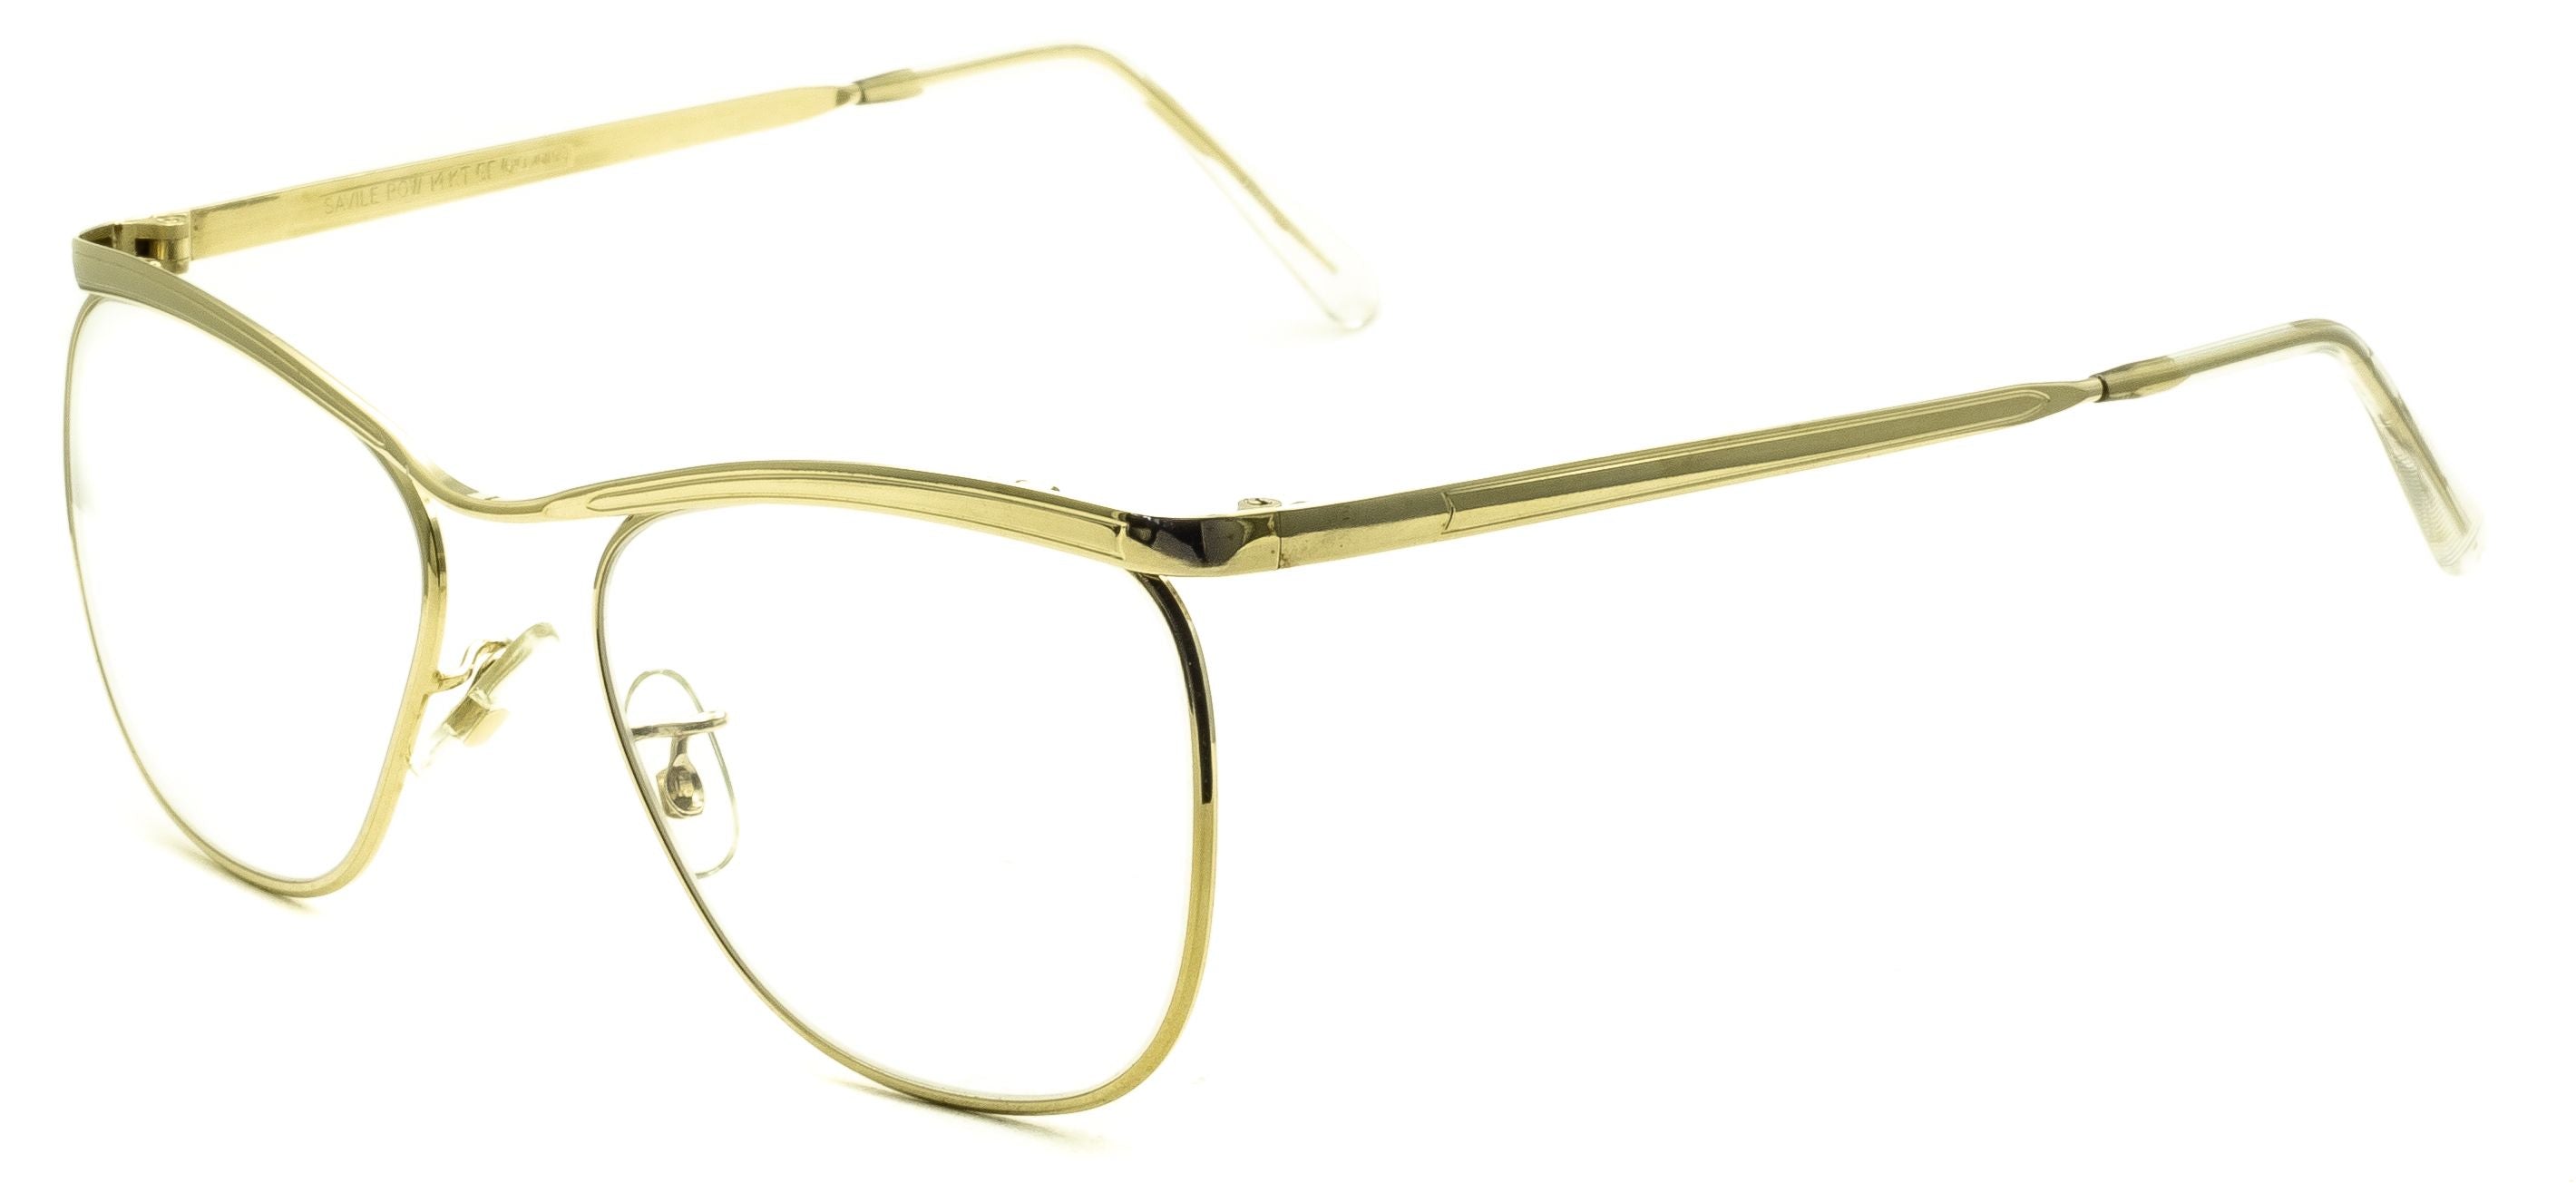 SAVILE ROW Dominor 14KT Gold 52x18mm FRAMES Optical Eyewear - NOS GGV Eyewear